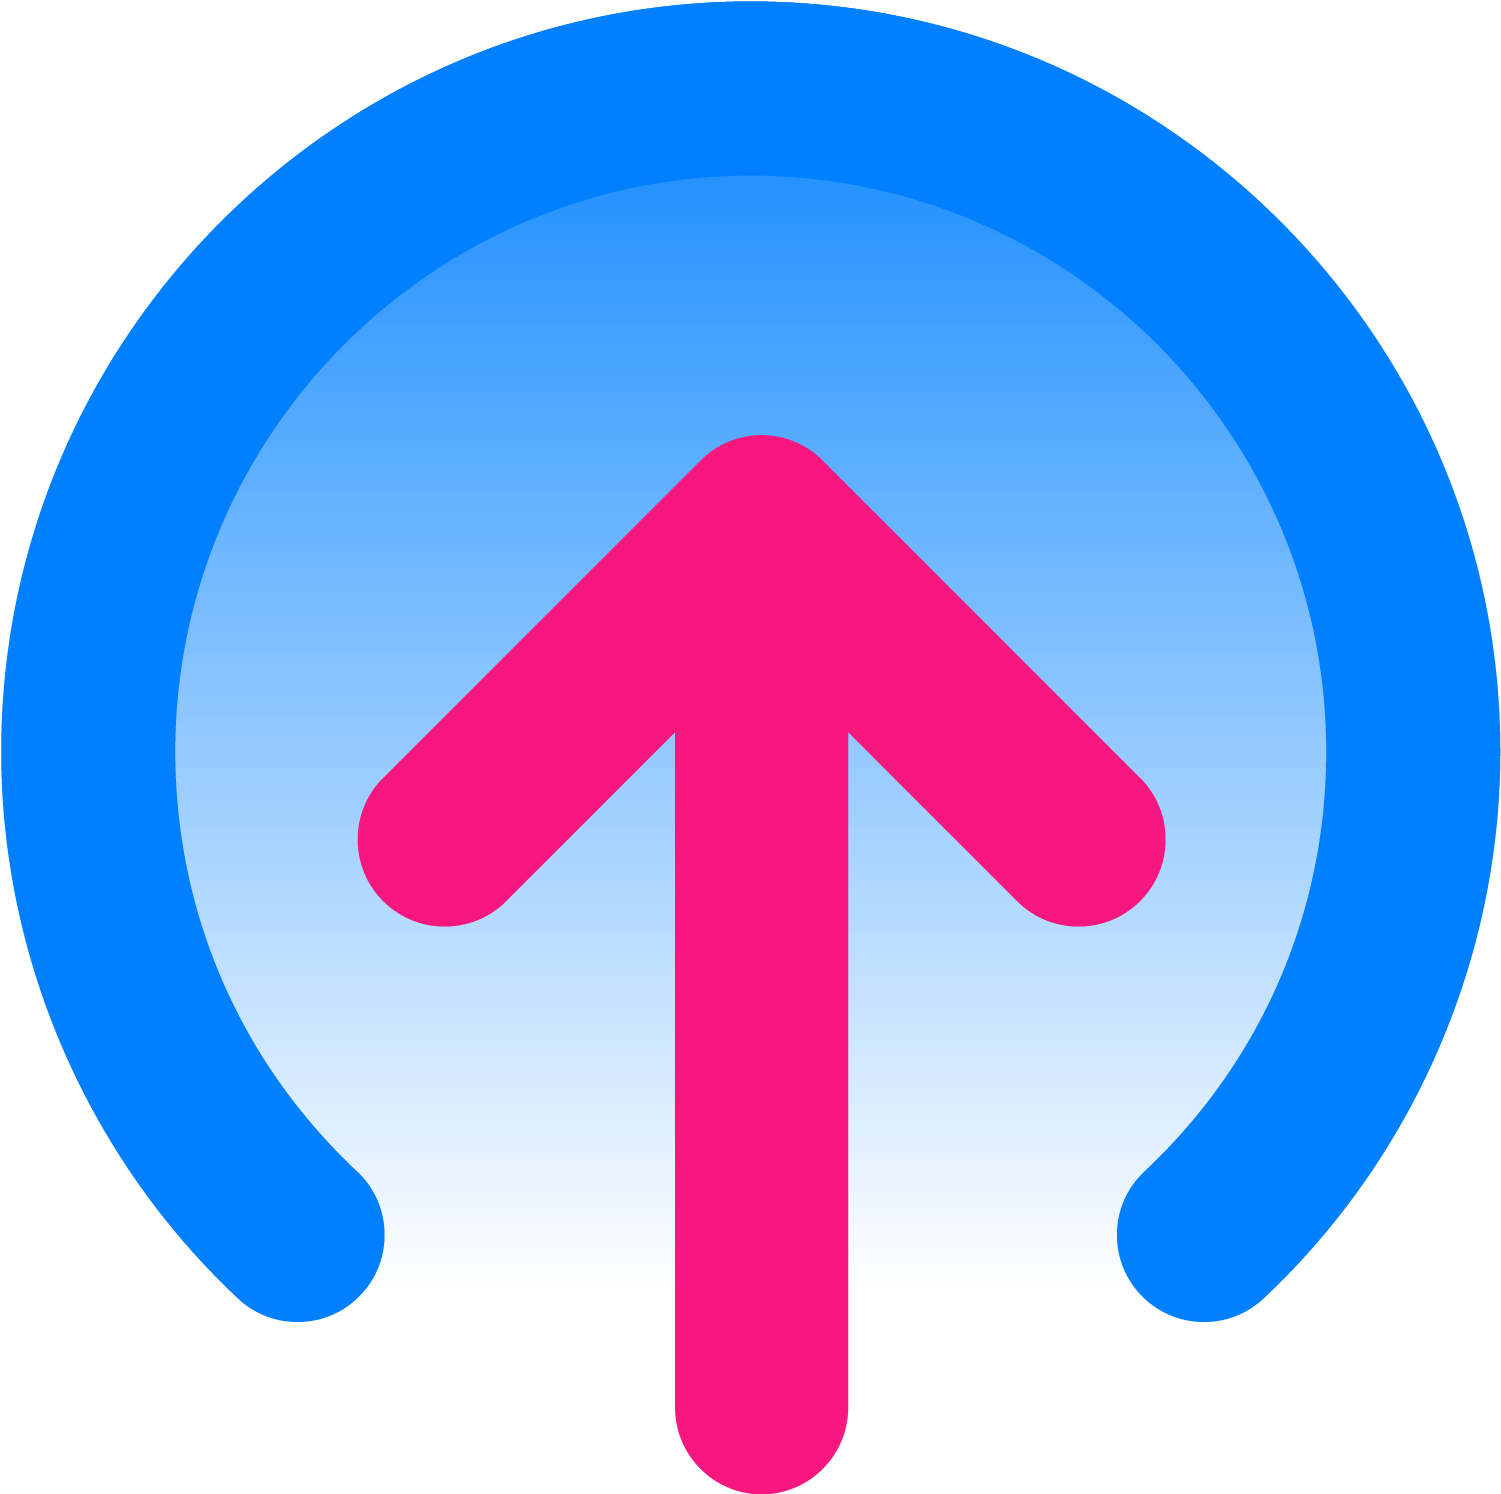 slide app logo